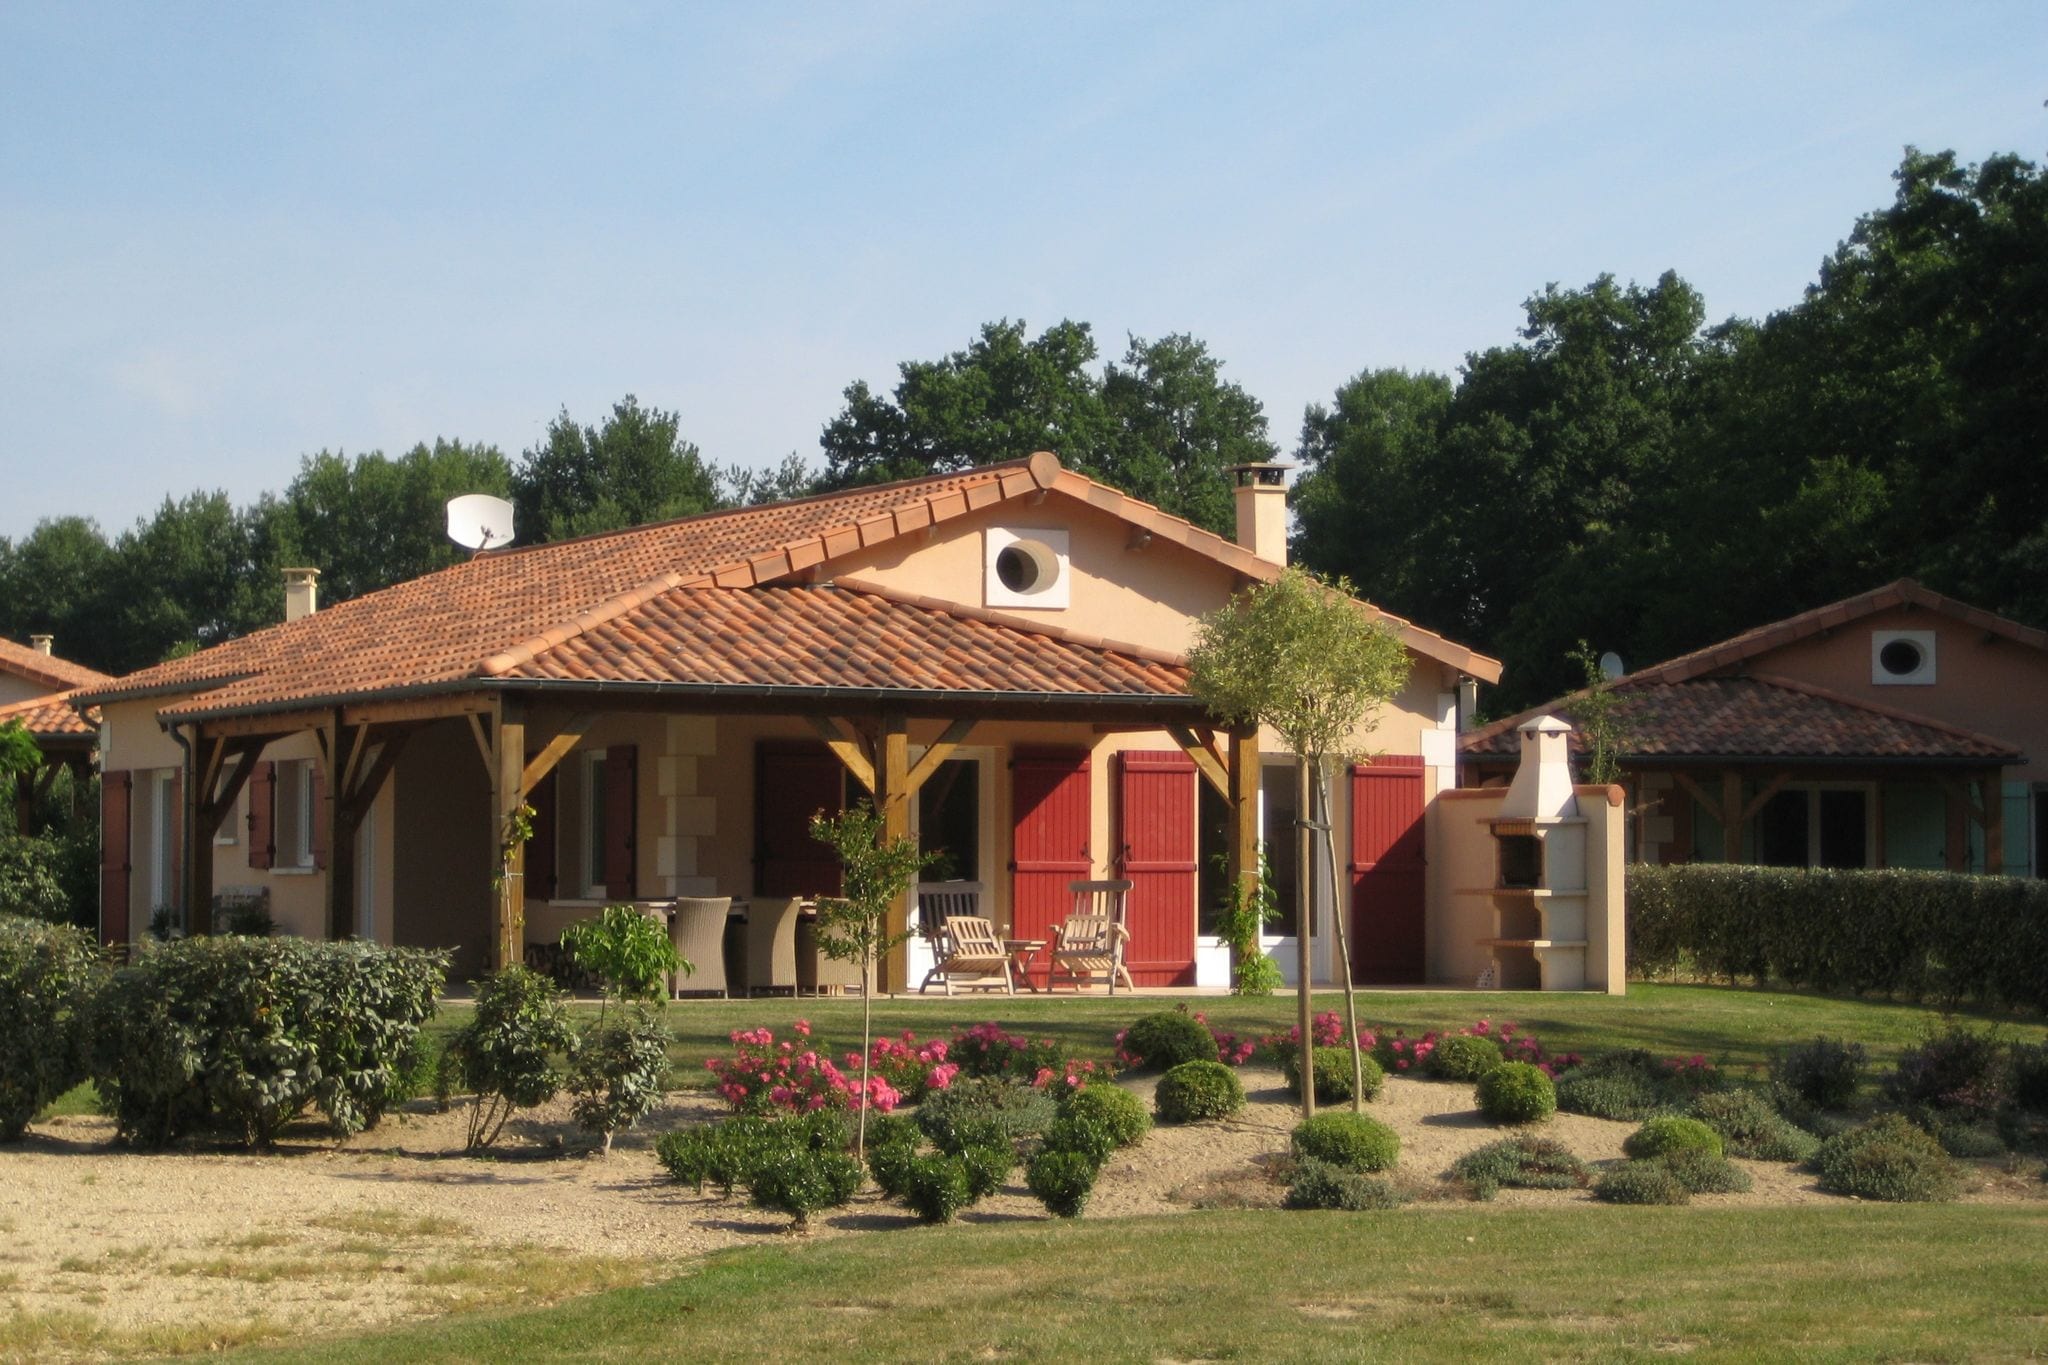 Modern villa with fire place, in the beautyful Loire region